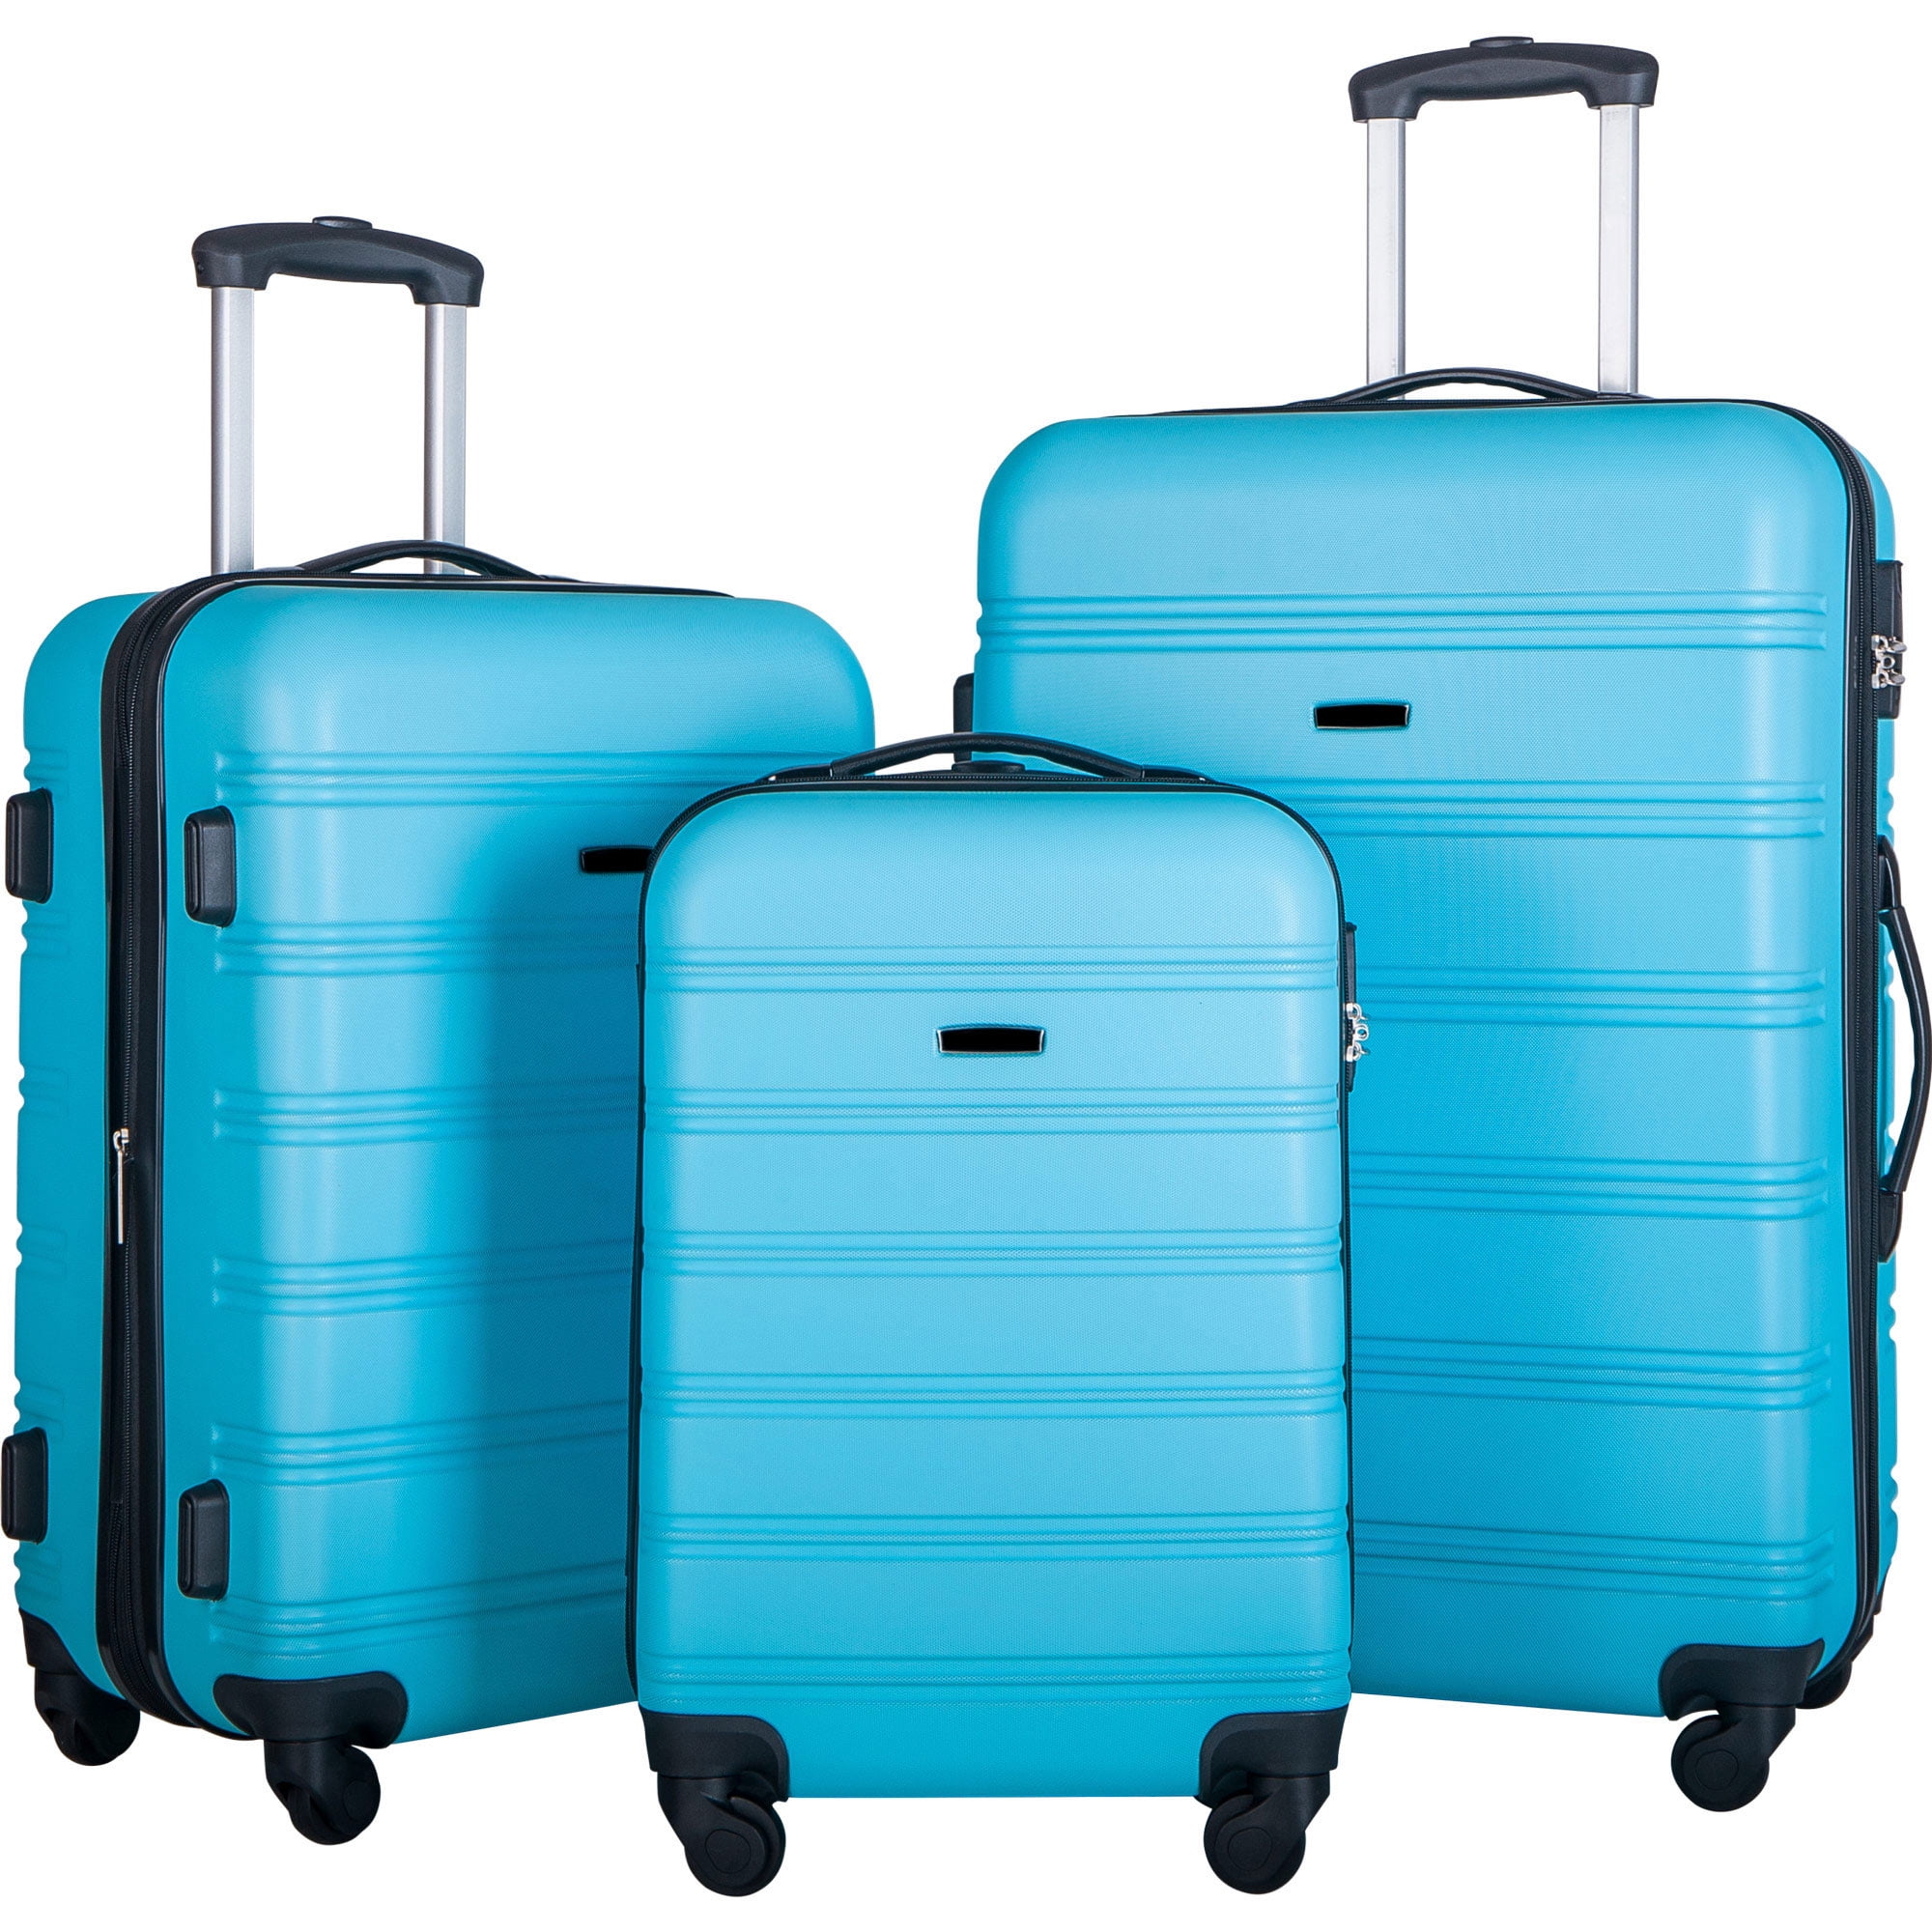 Basics Hardside Spinner Luggage Multi-Piece Set 